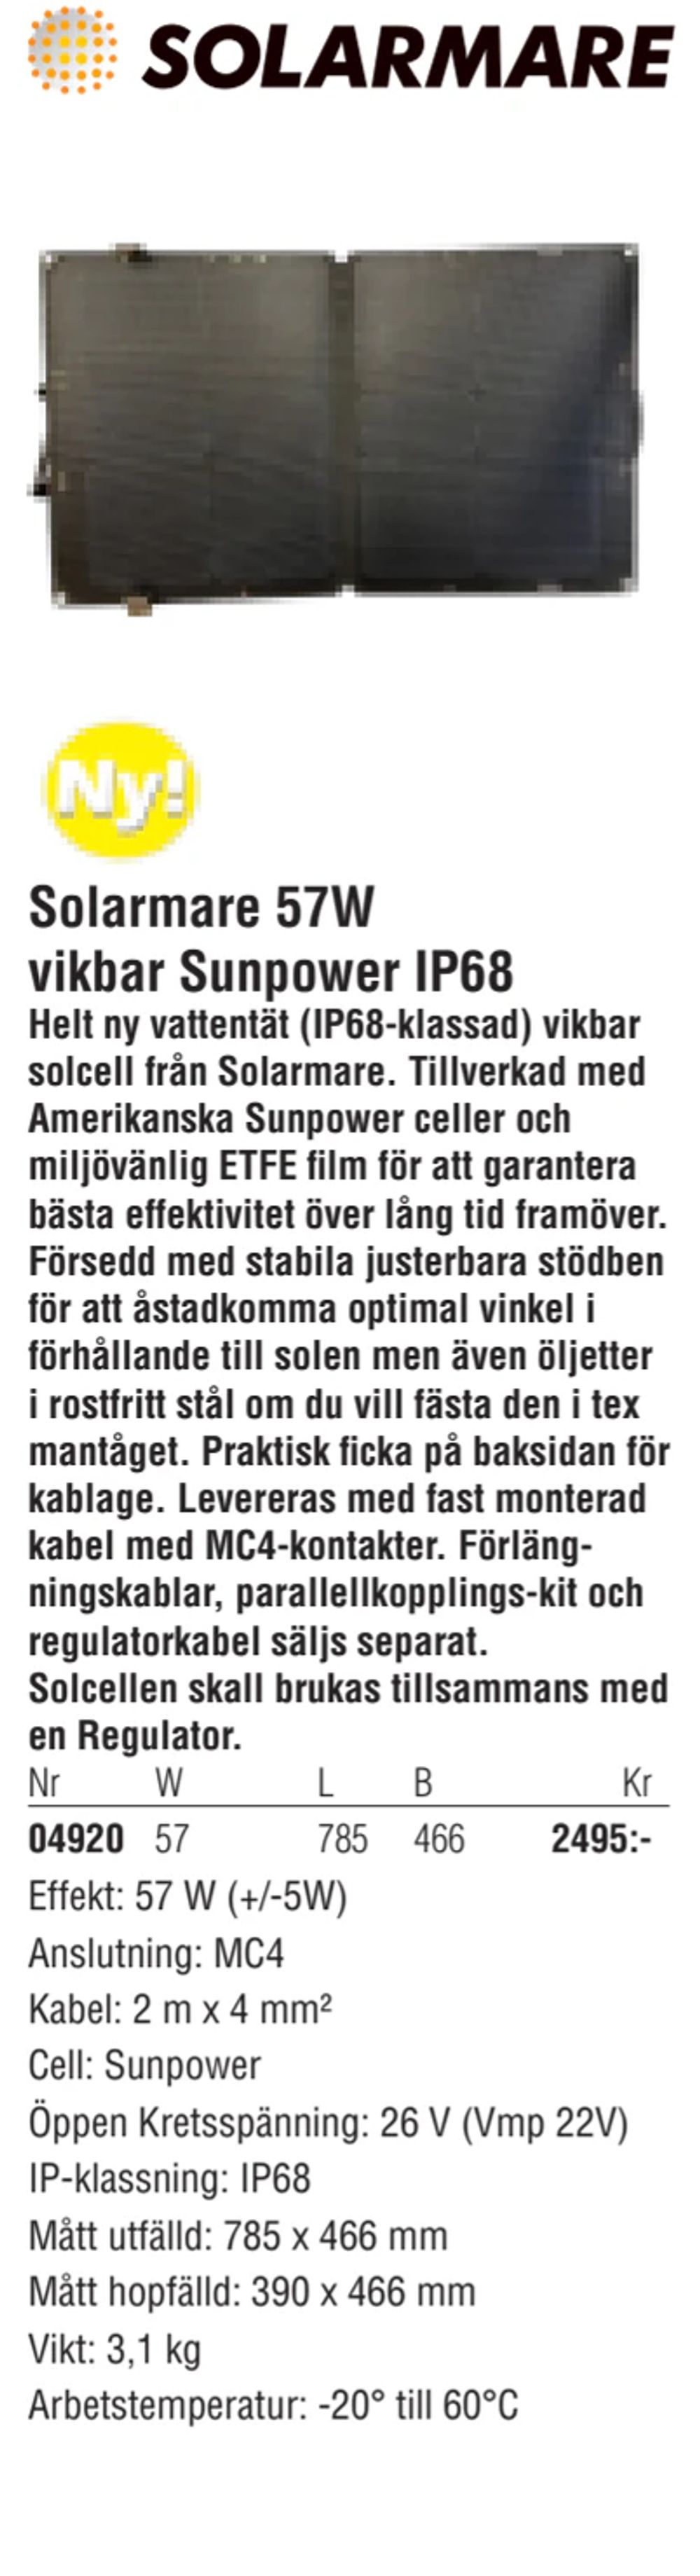 Erbjudanden på Solarmare 57W vikbar Sunpower IP68 från Erlandsons Brygga för 2 495 kr